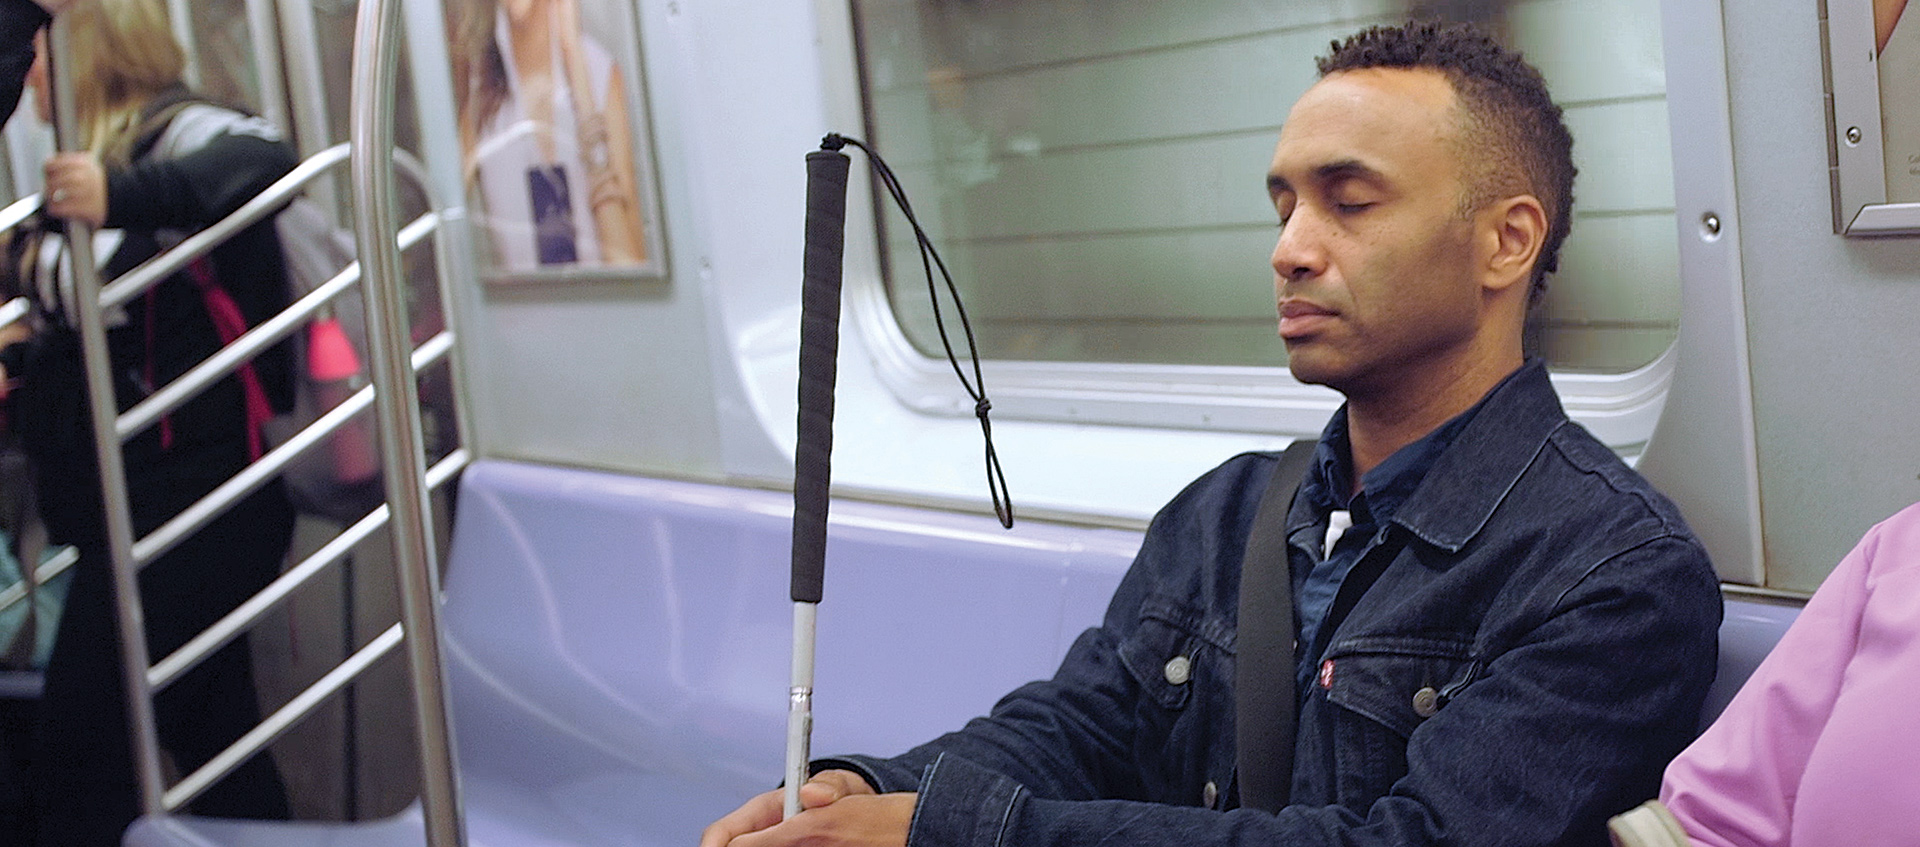 Man holding cane on subway